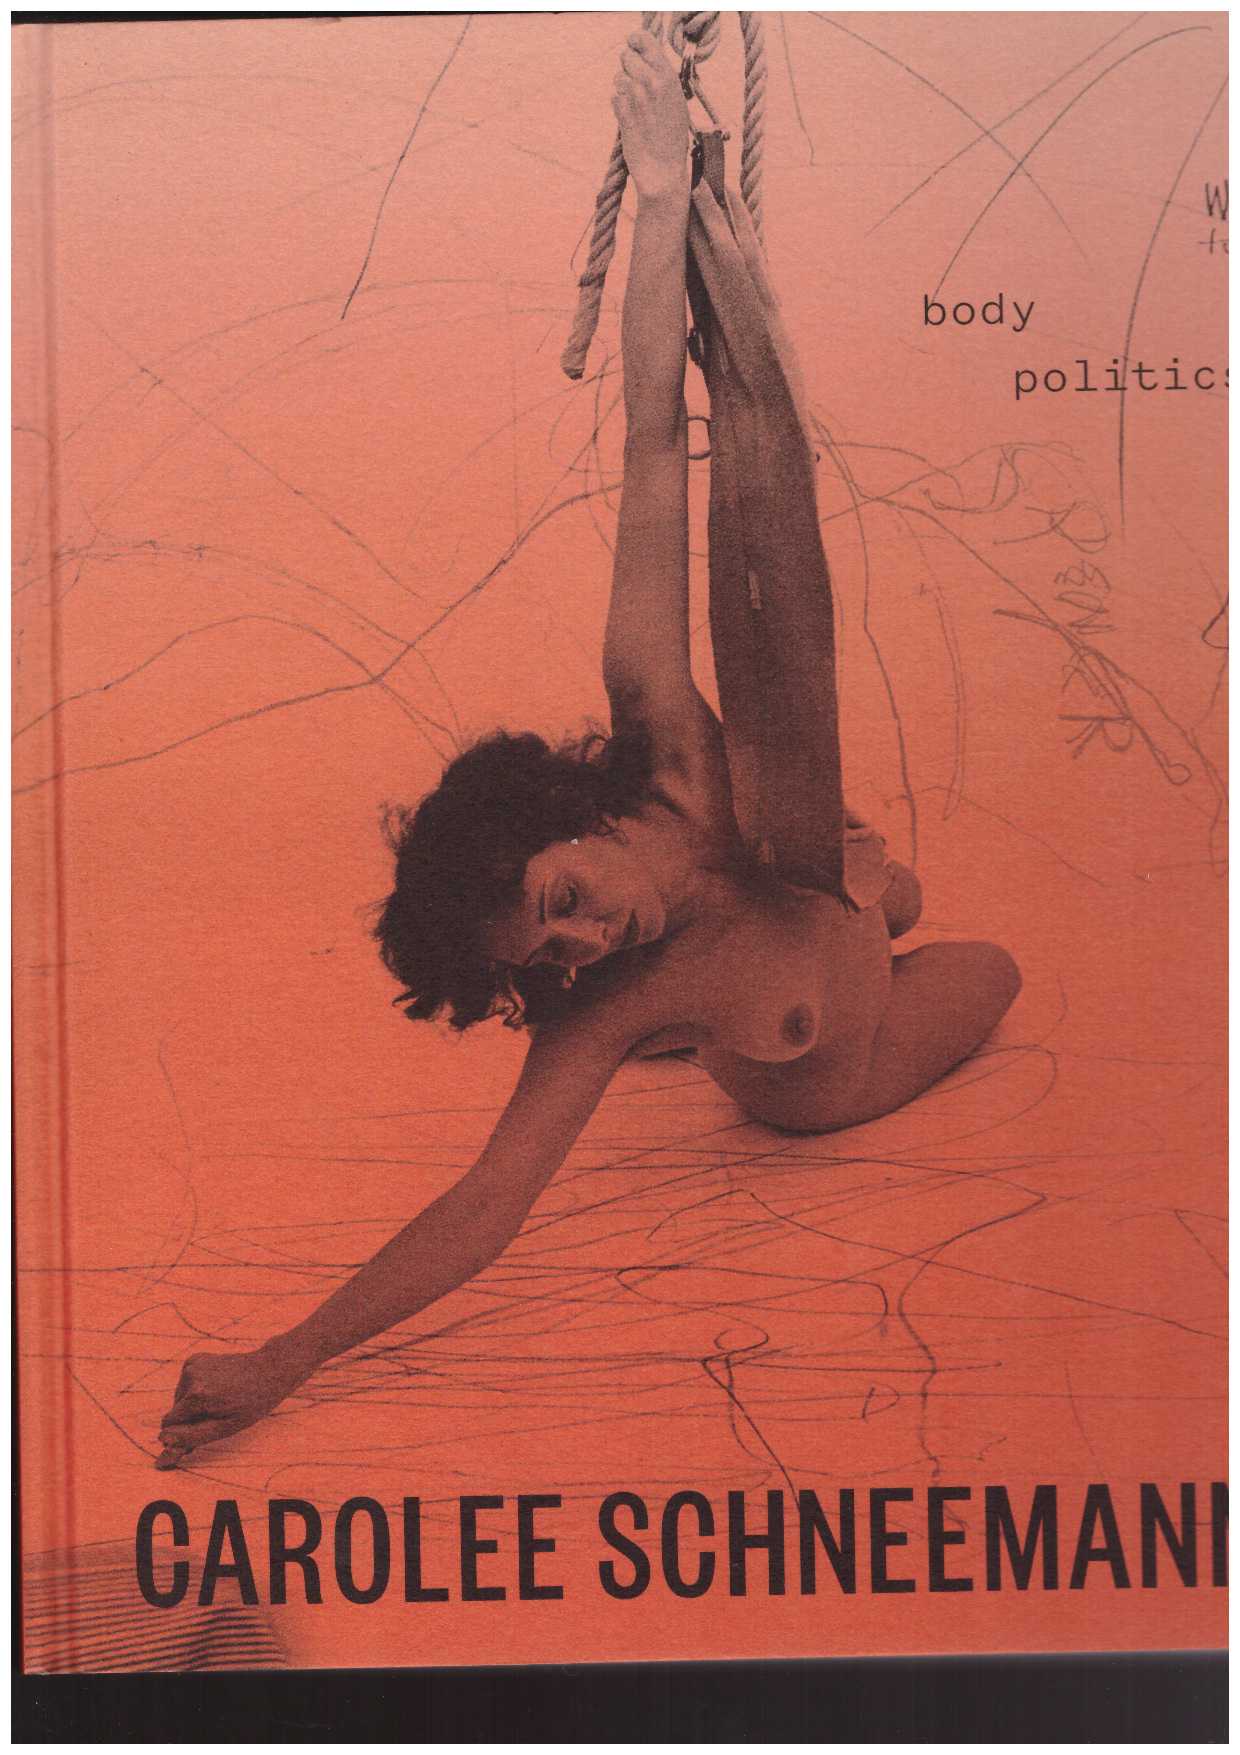 SCHNEEMANN, Carolee; JOHNSON, Lotte (ed.); BAYLEY, Chris (ed.) - Carolee Schneemann: Body Politics